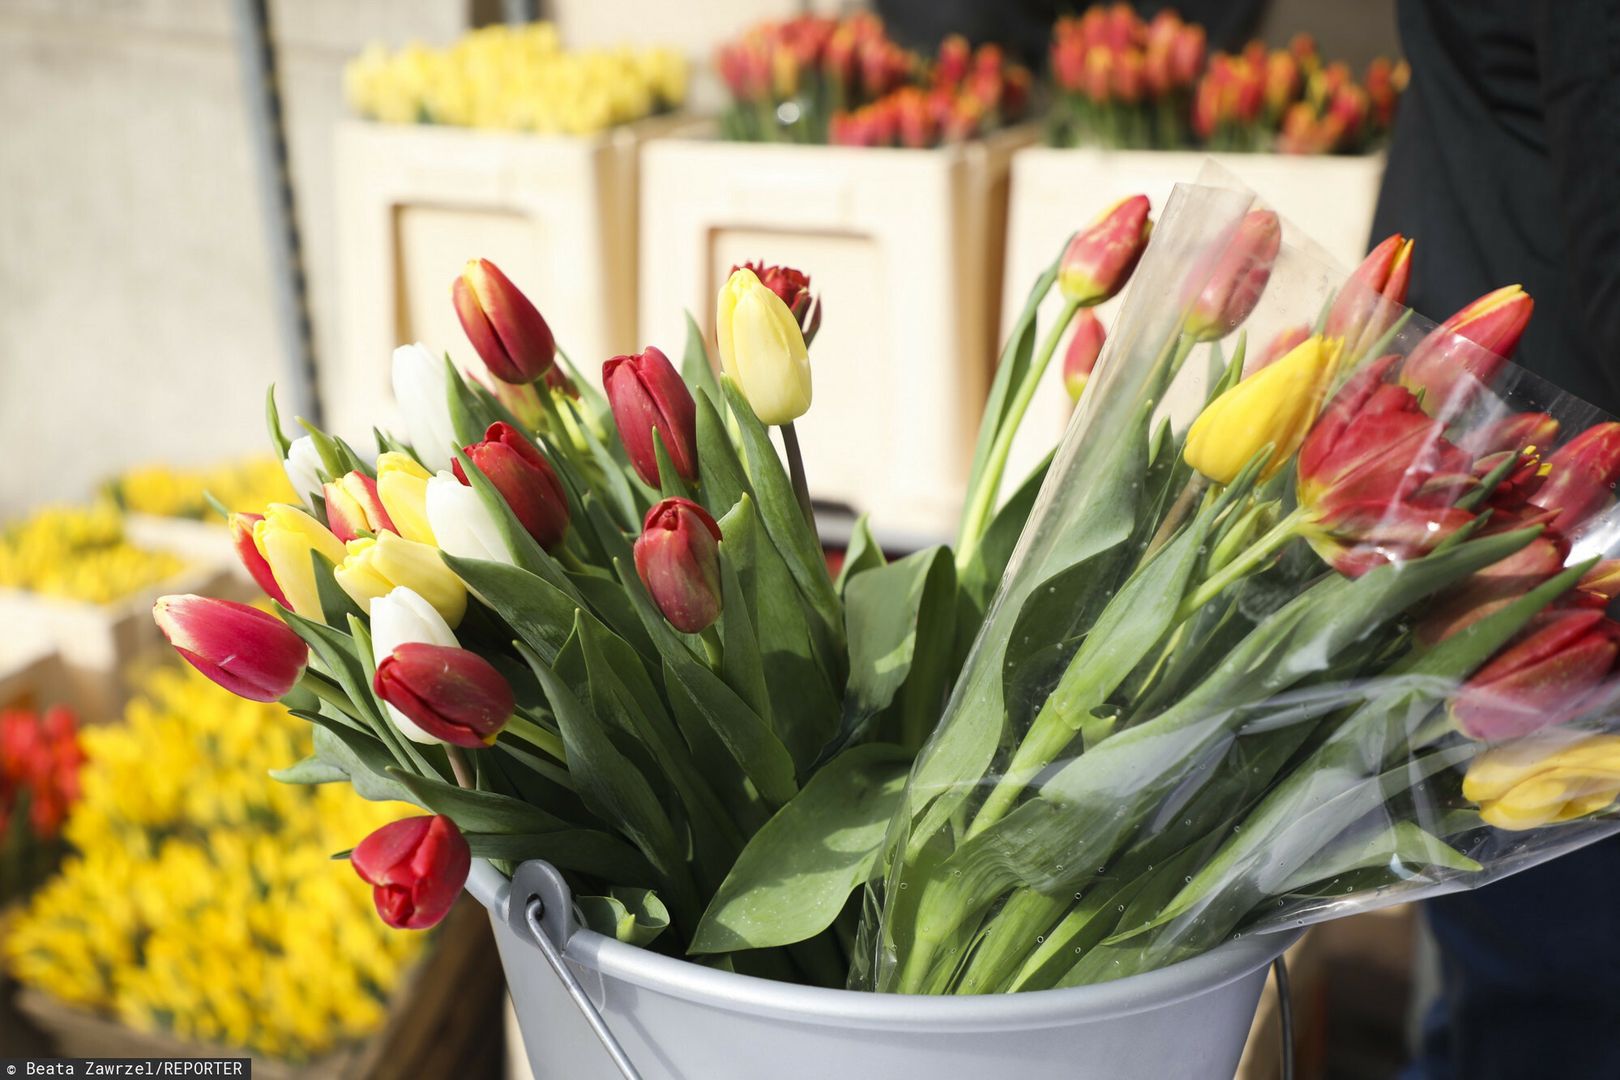 Trik na zwiędnięte tulipany. Efekt niemal natychmiast